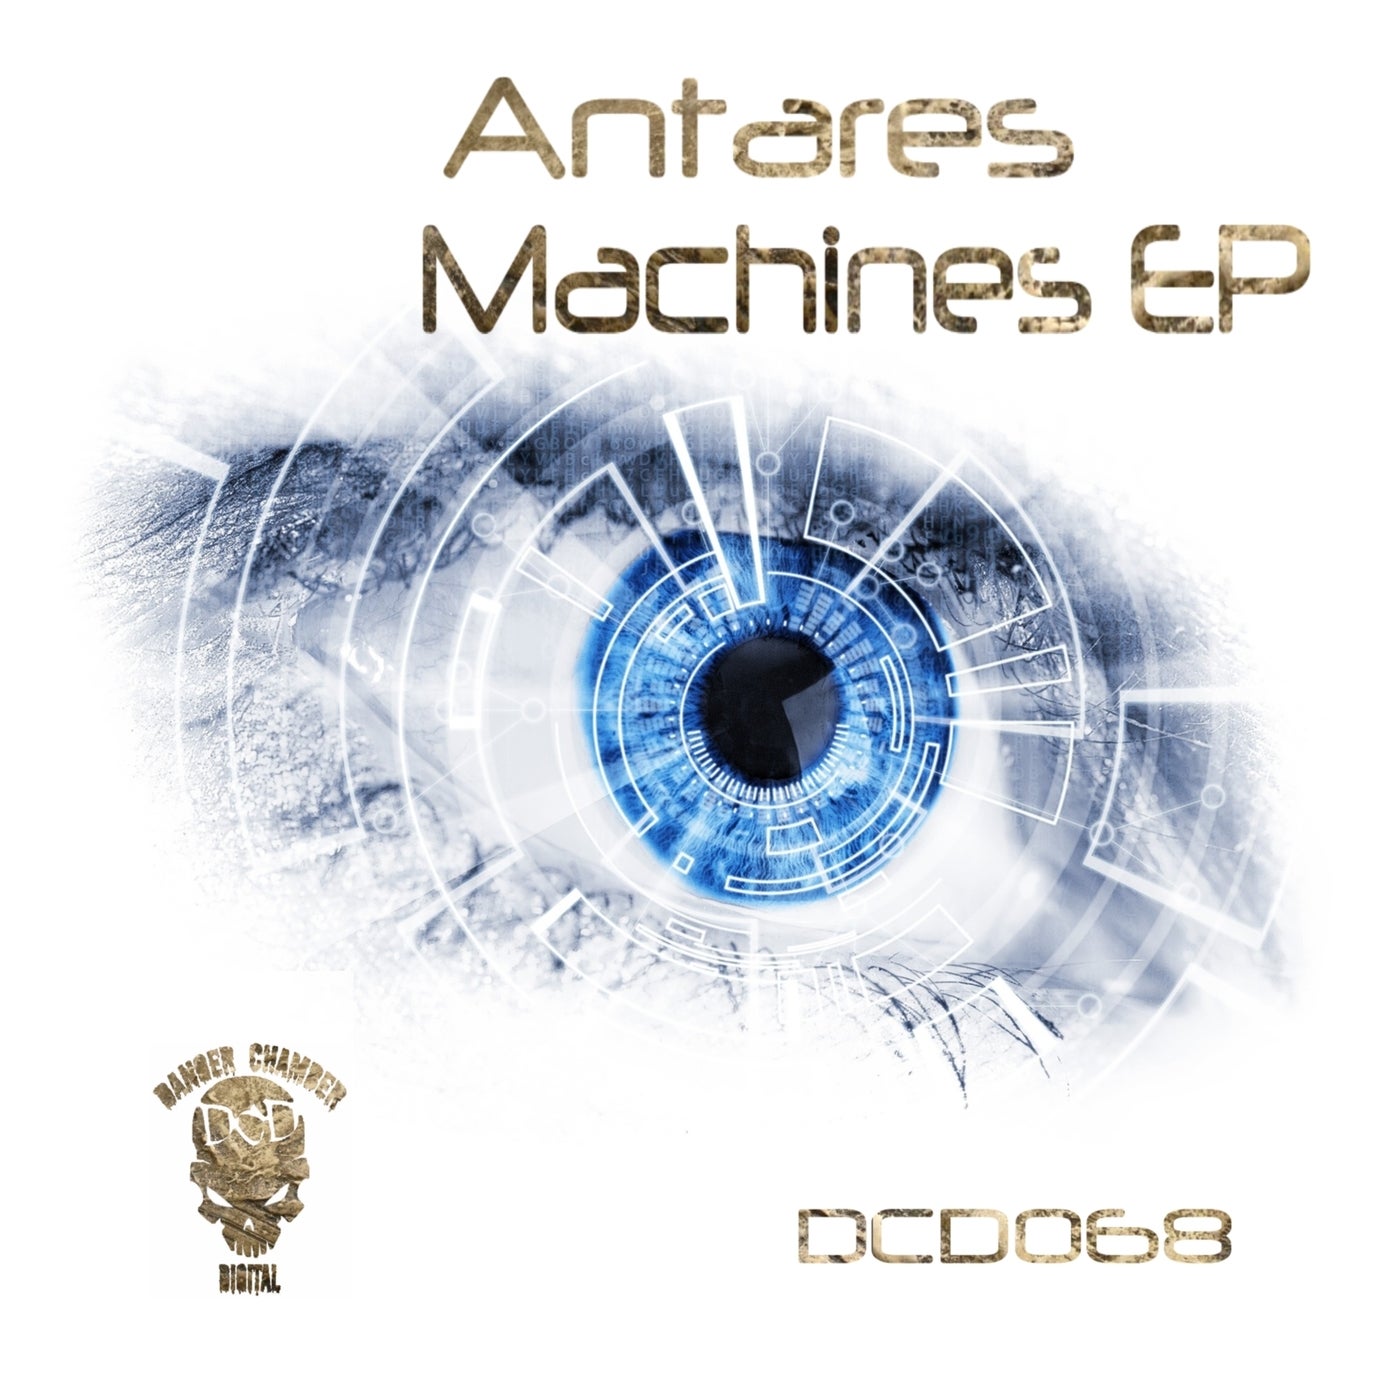 Machines EP